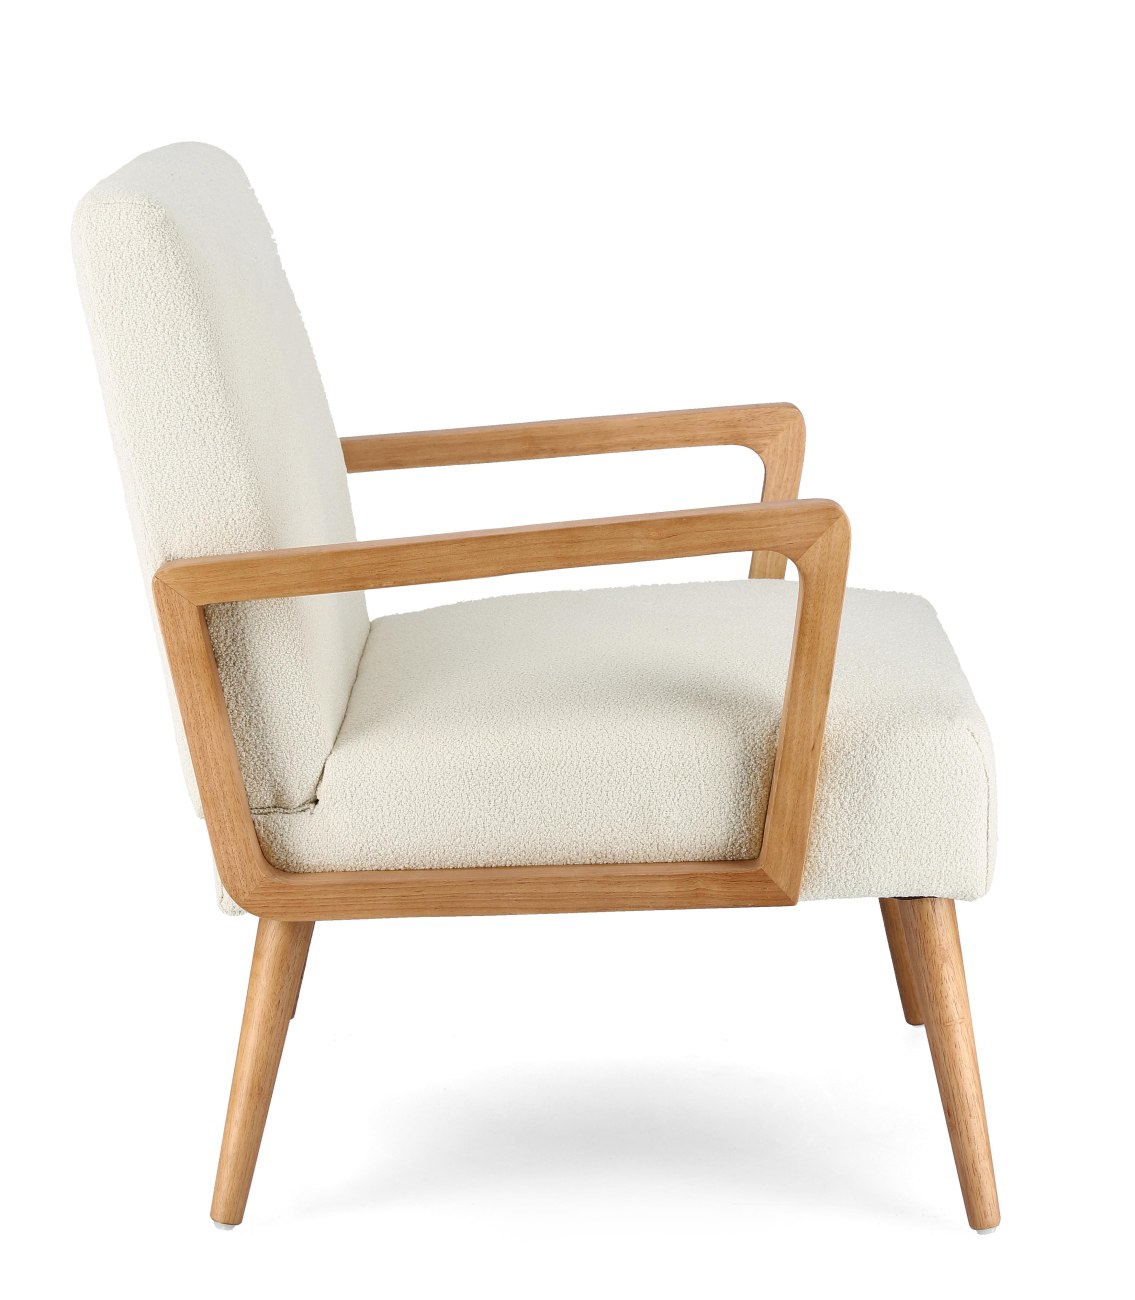 Der Sessel Verina überzeugt mit seinem modernen Stil. Gefertigt wurde er aus einem Stoff-Bezug, welcher einen Creme Farbton besitzt. Das Gestell ist aus Kautschukholz und hat eine natürliche Farbe. Der Sessel verfügt über eine Armlehne.